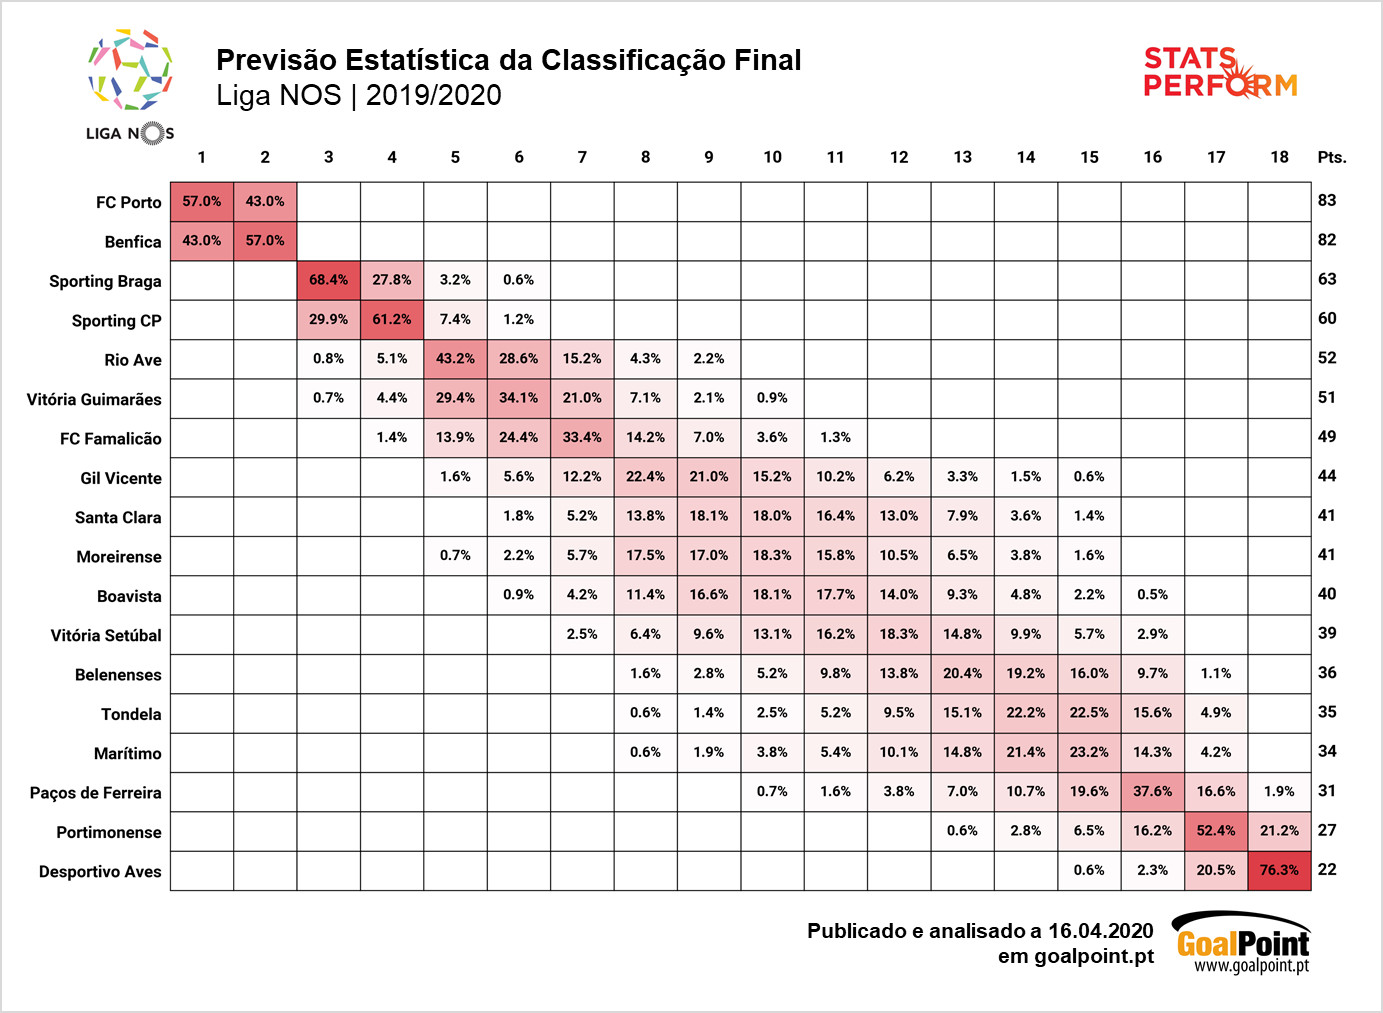 A classificação final da Liga 19/20 segundo os analytics